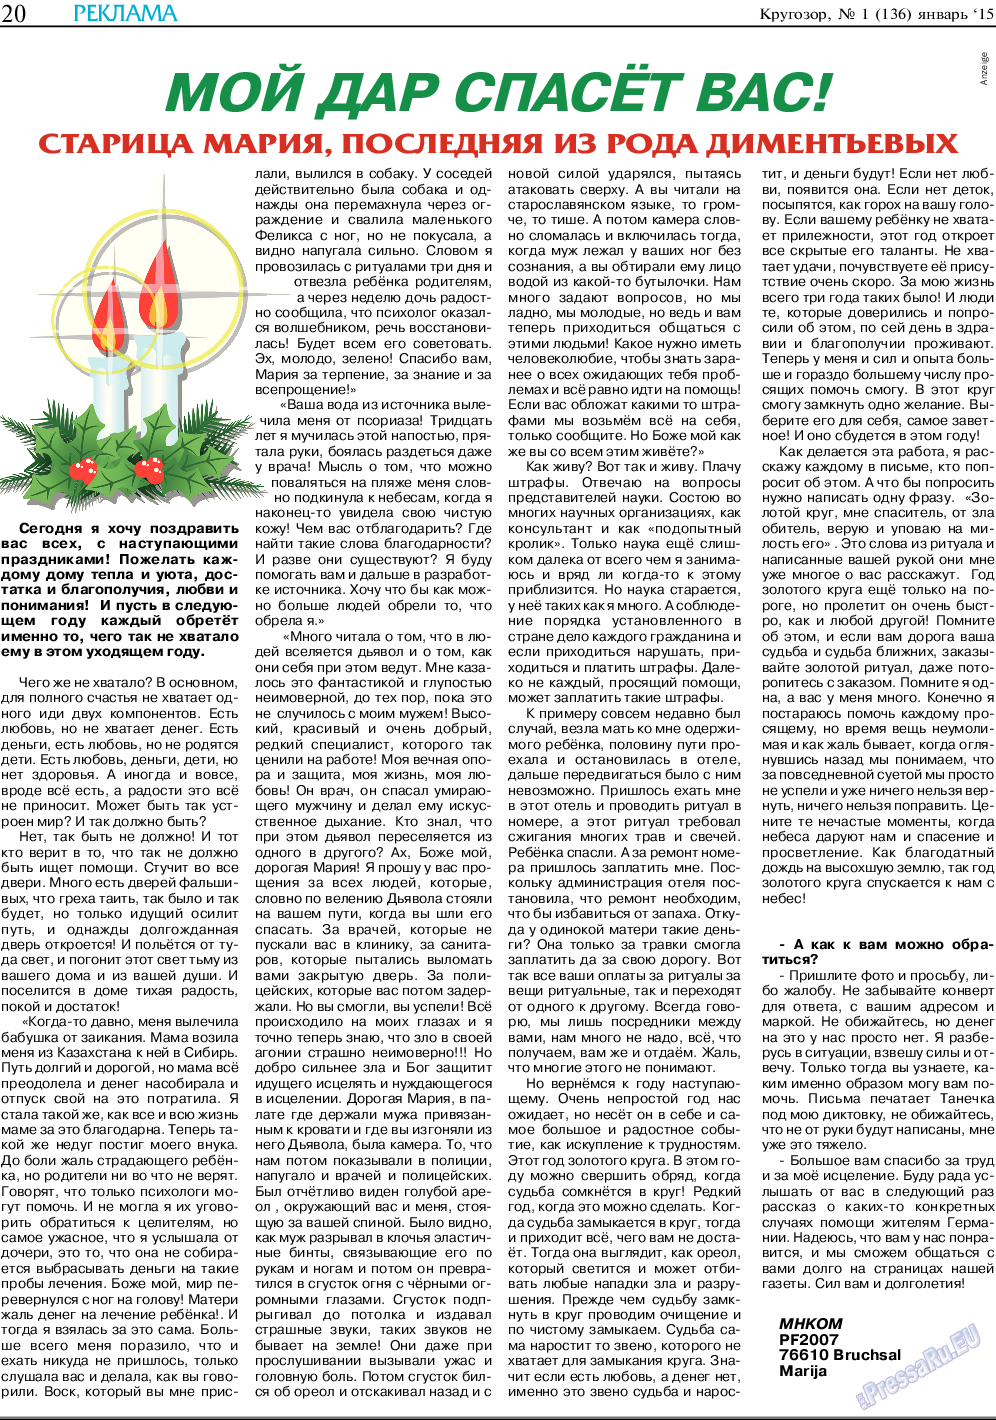 Кругозор, газета. 2015 №1 стр.20